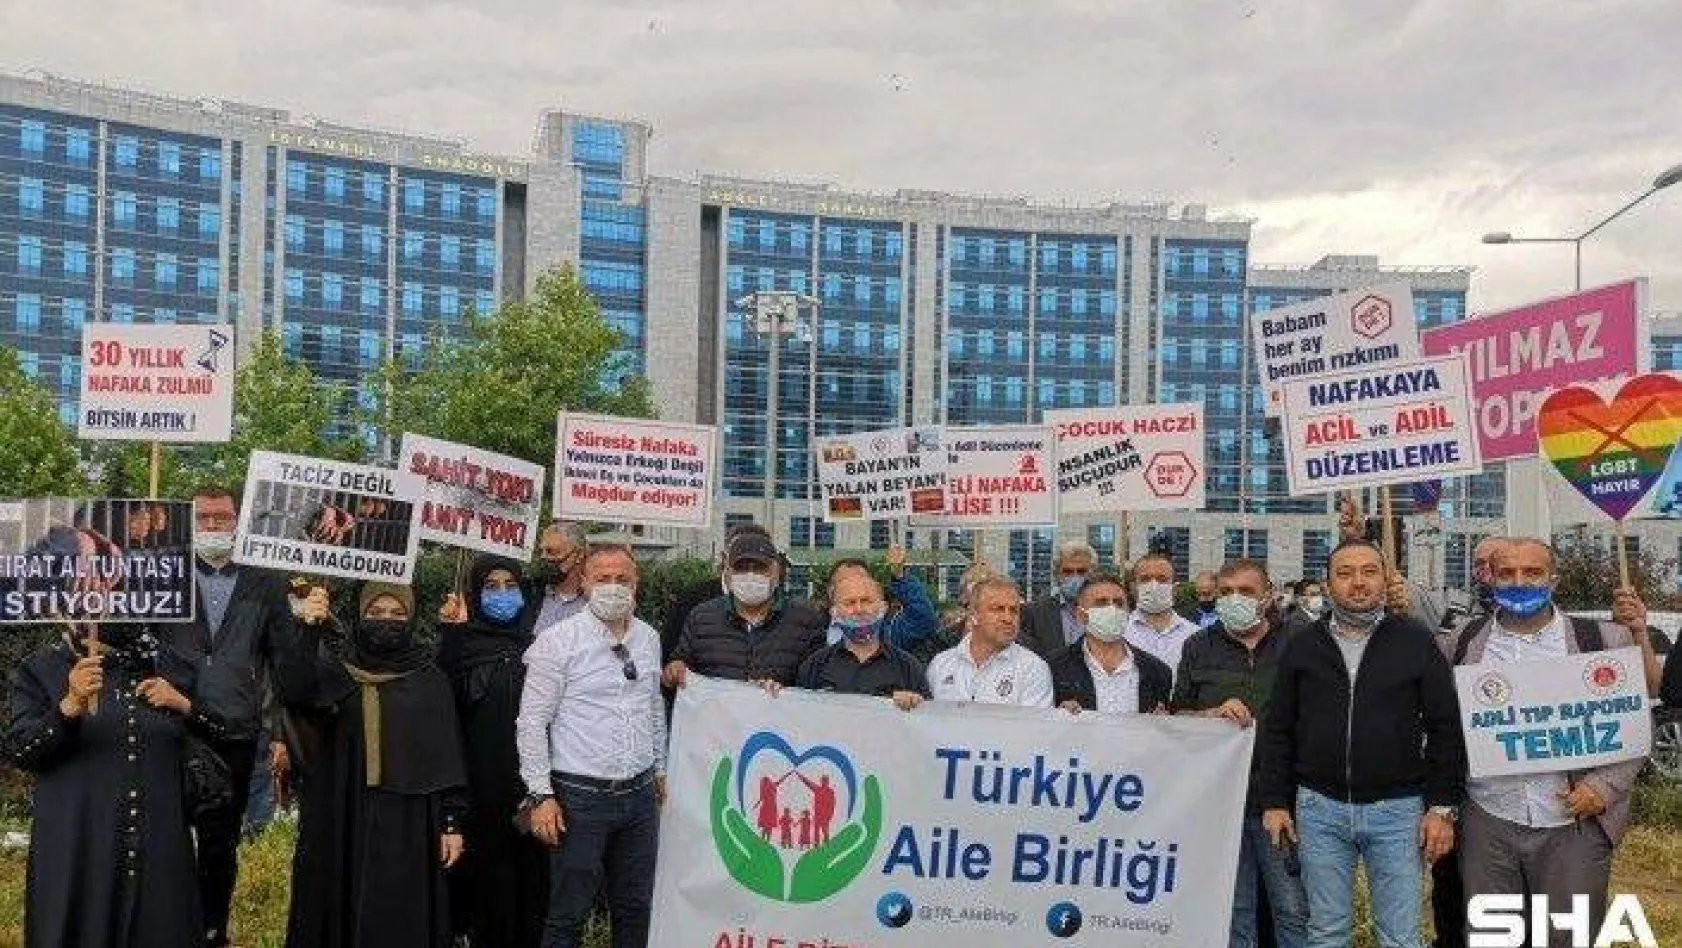 Süresiz nafaka mağdurlarının Ankara'ya 'adalet yürüyüşü' başladı